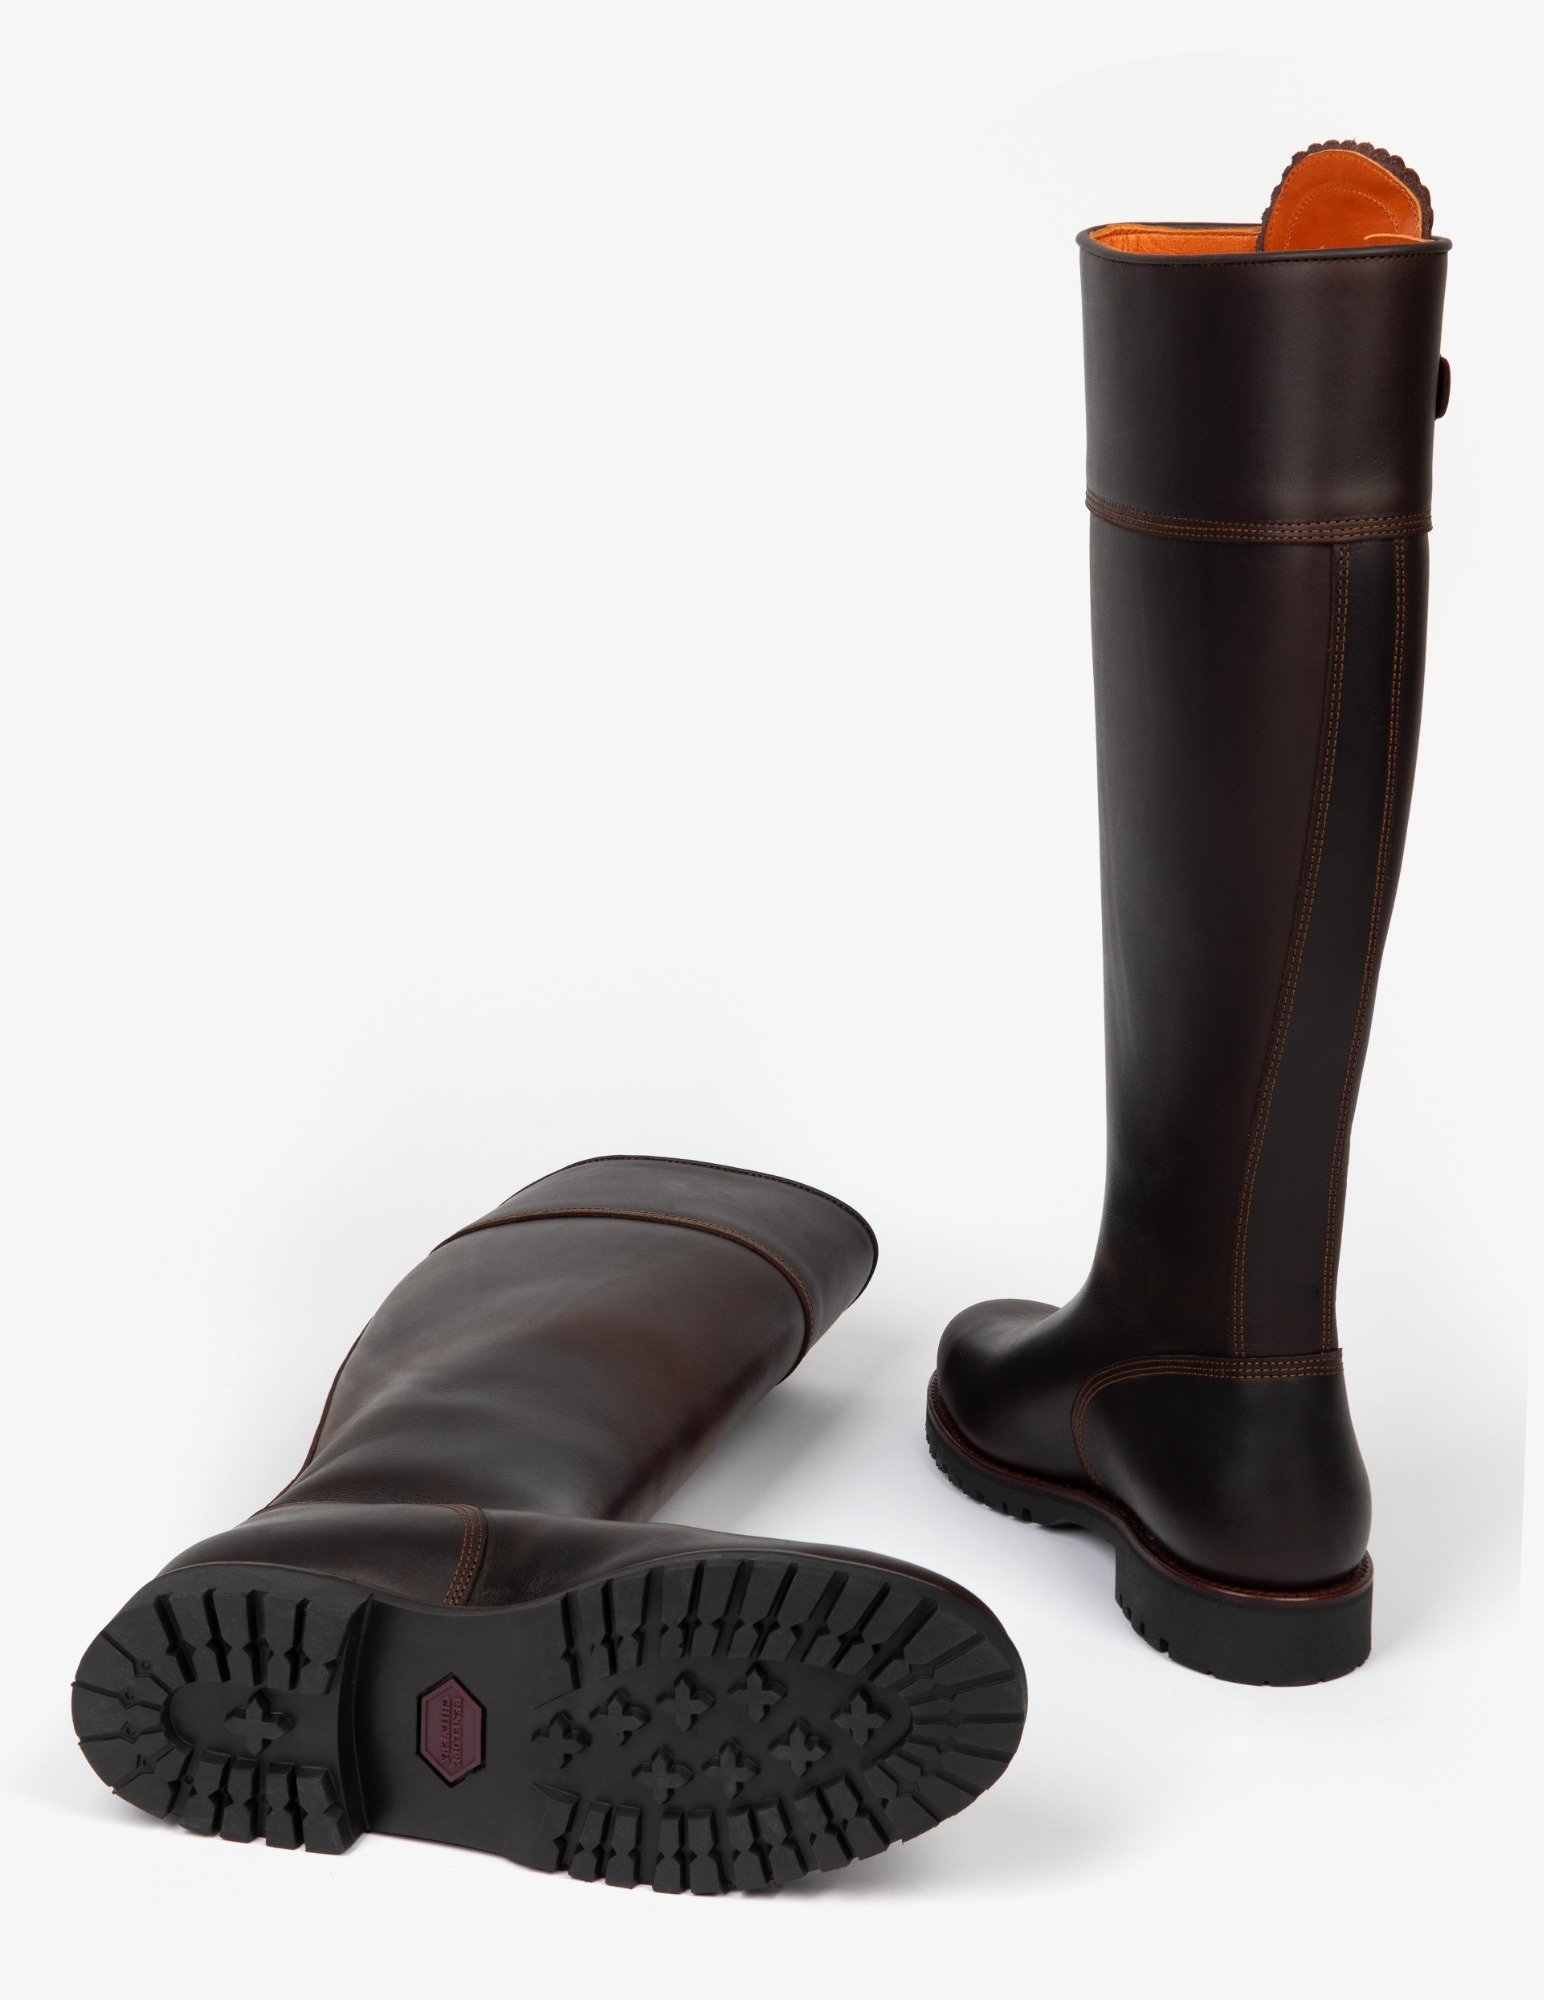 Long Tassel Boot - Conker | Women's Tassel Boots | Penelope Chilvers